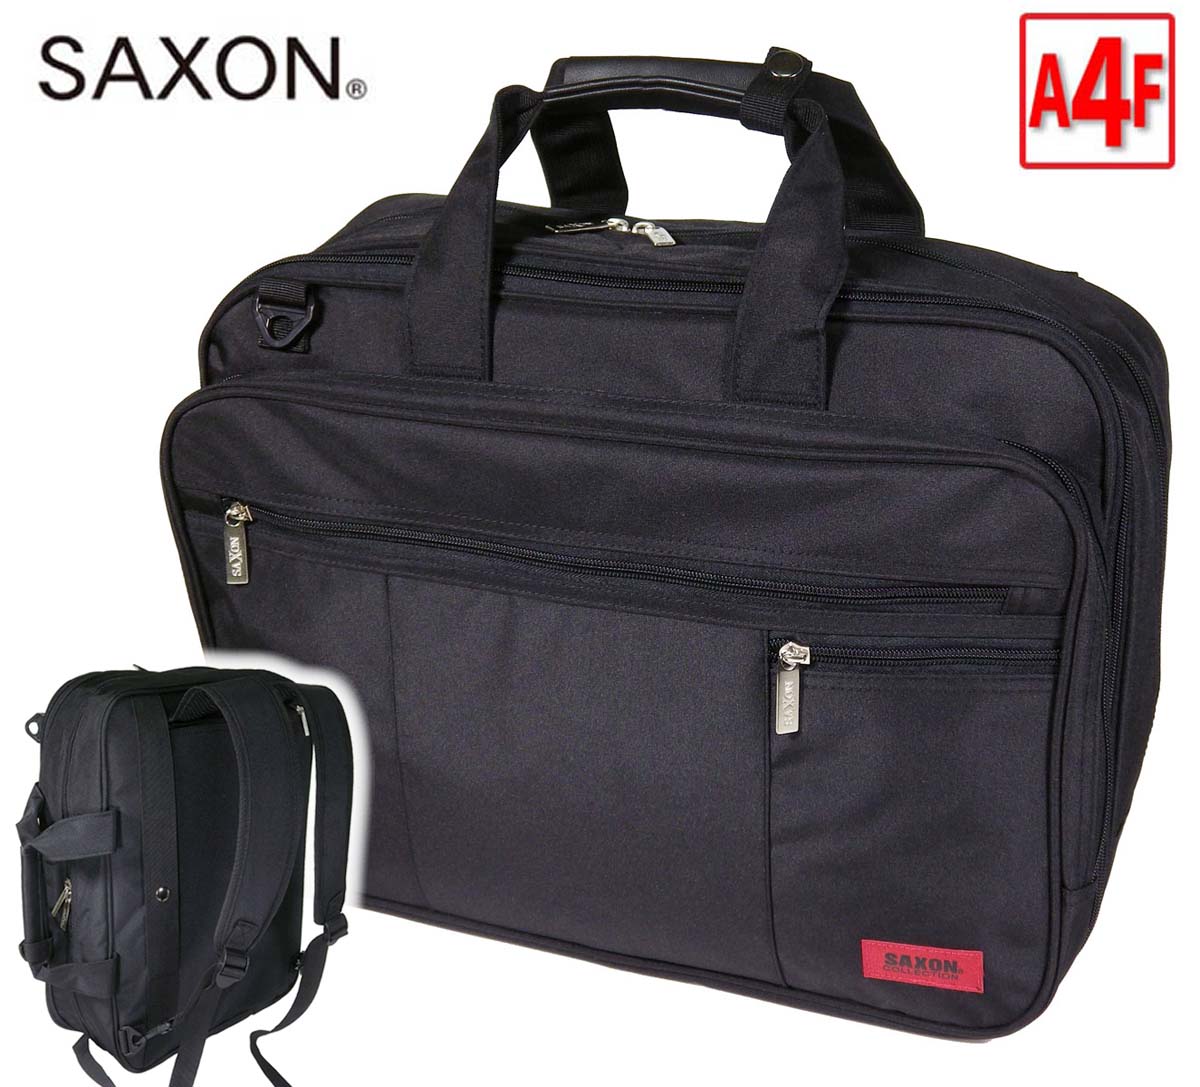 ビジネスバッグ A4 ブランド SAXON 縦型 3Way 